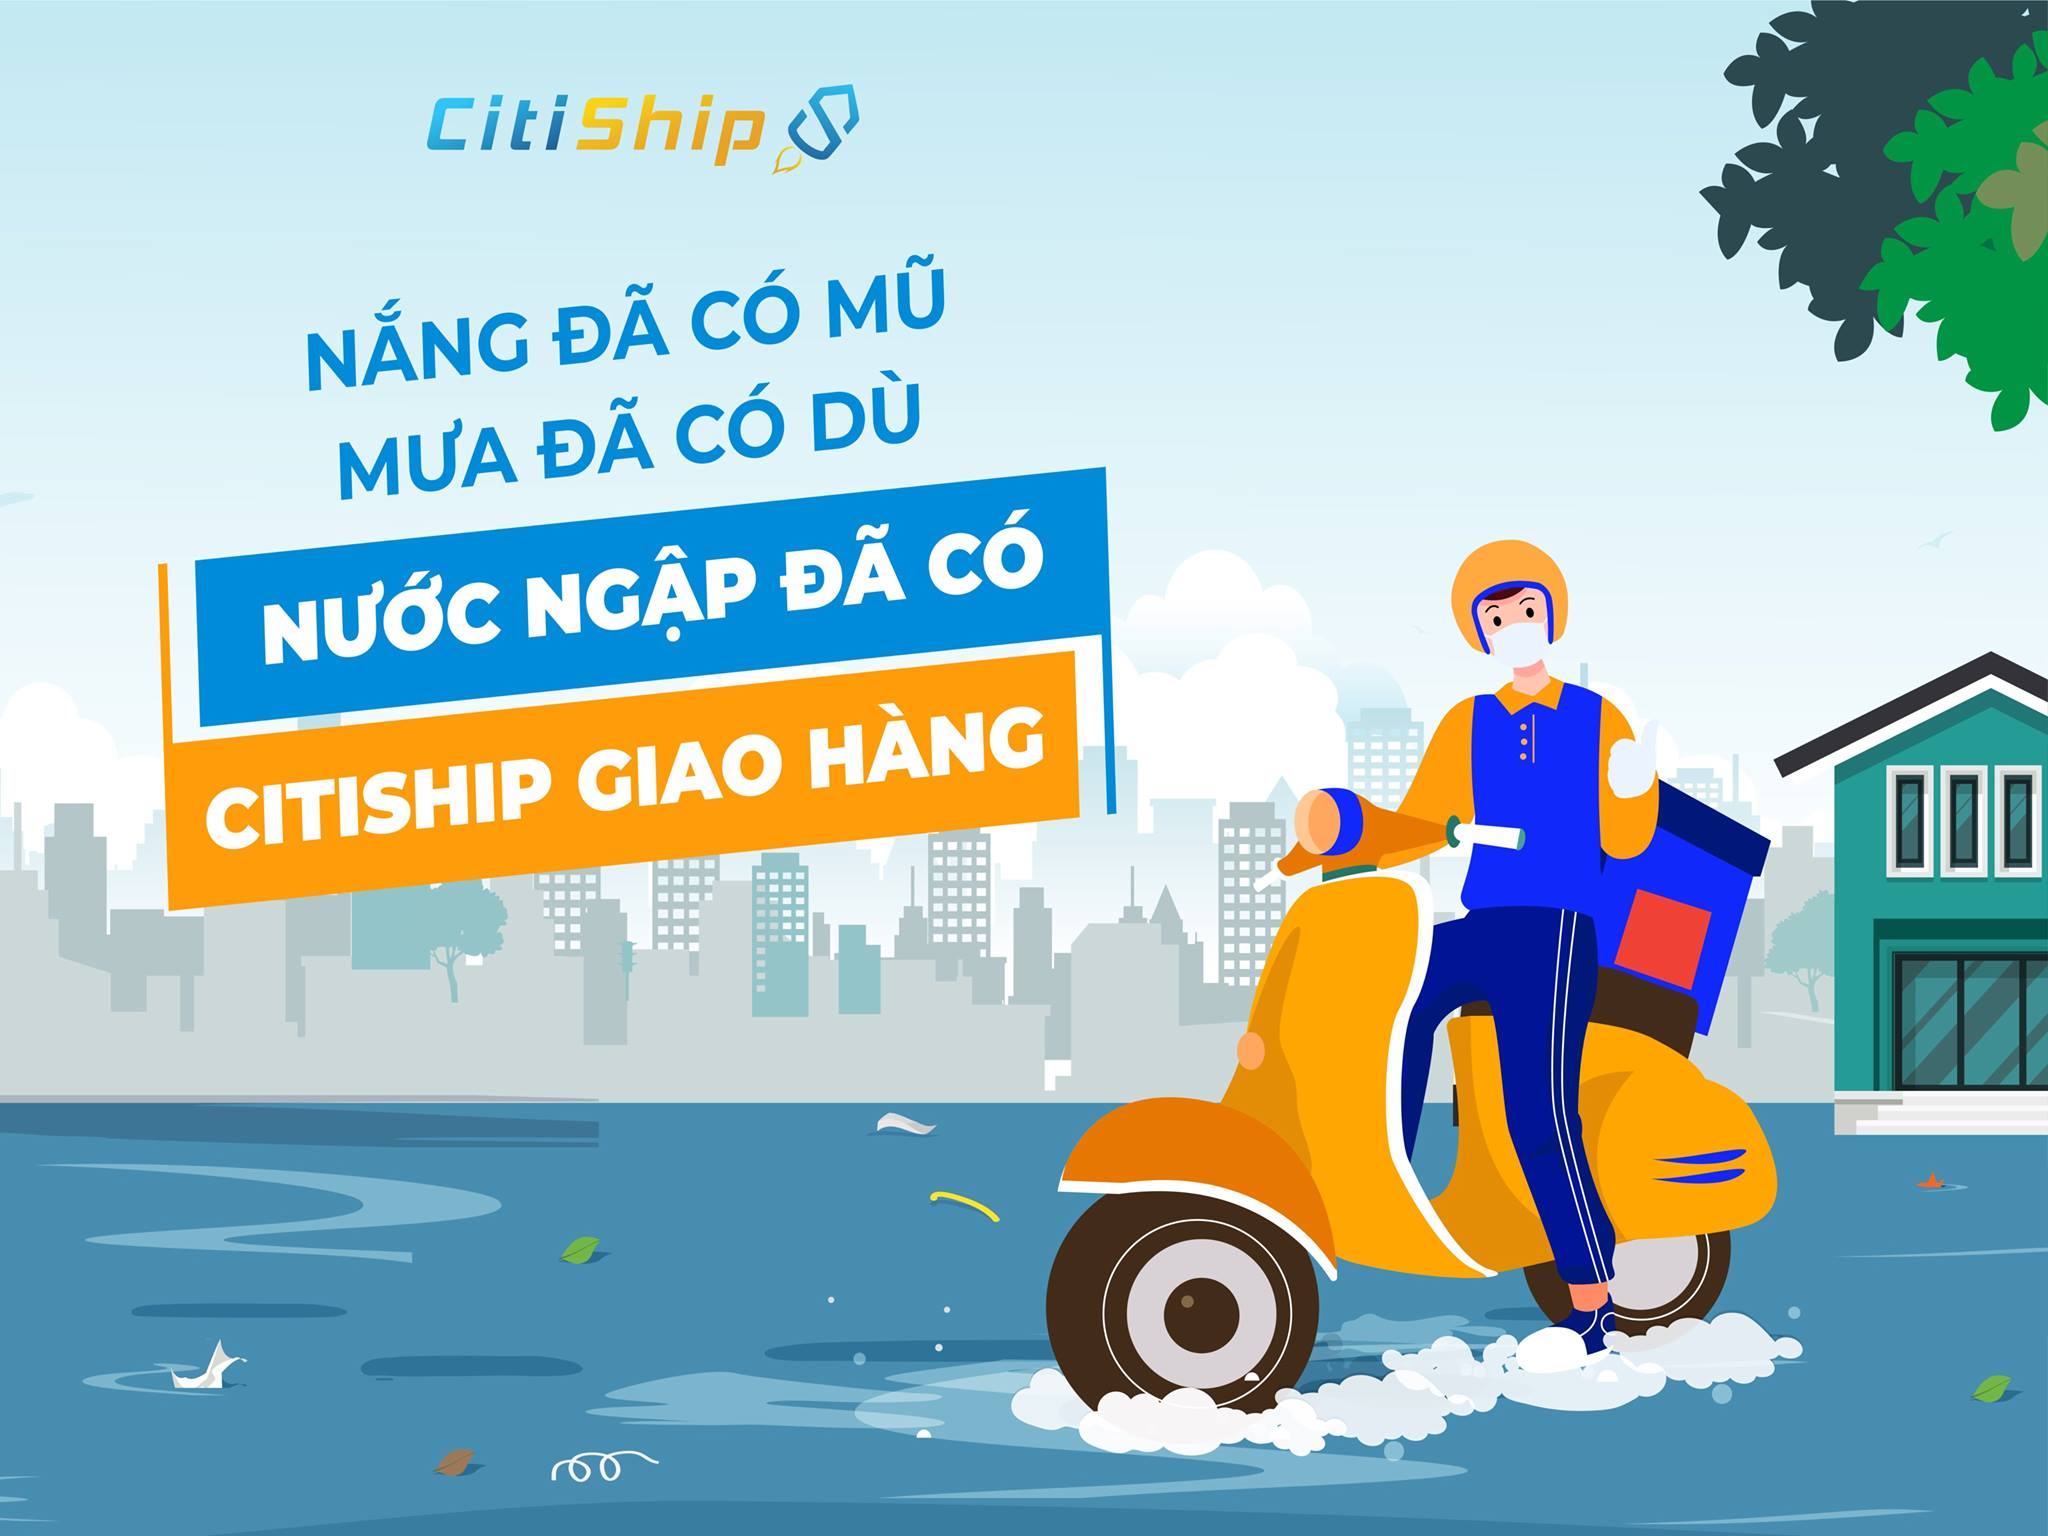 CITISHIP-SHIPPER Cần Thơ, dịch vụ "Mua hàng theo yêu cầu, giao hàng tận nơi".